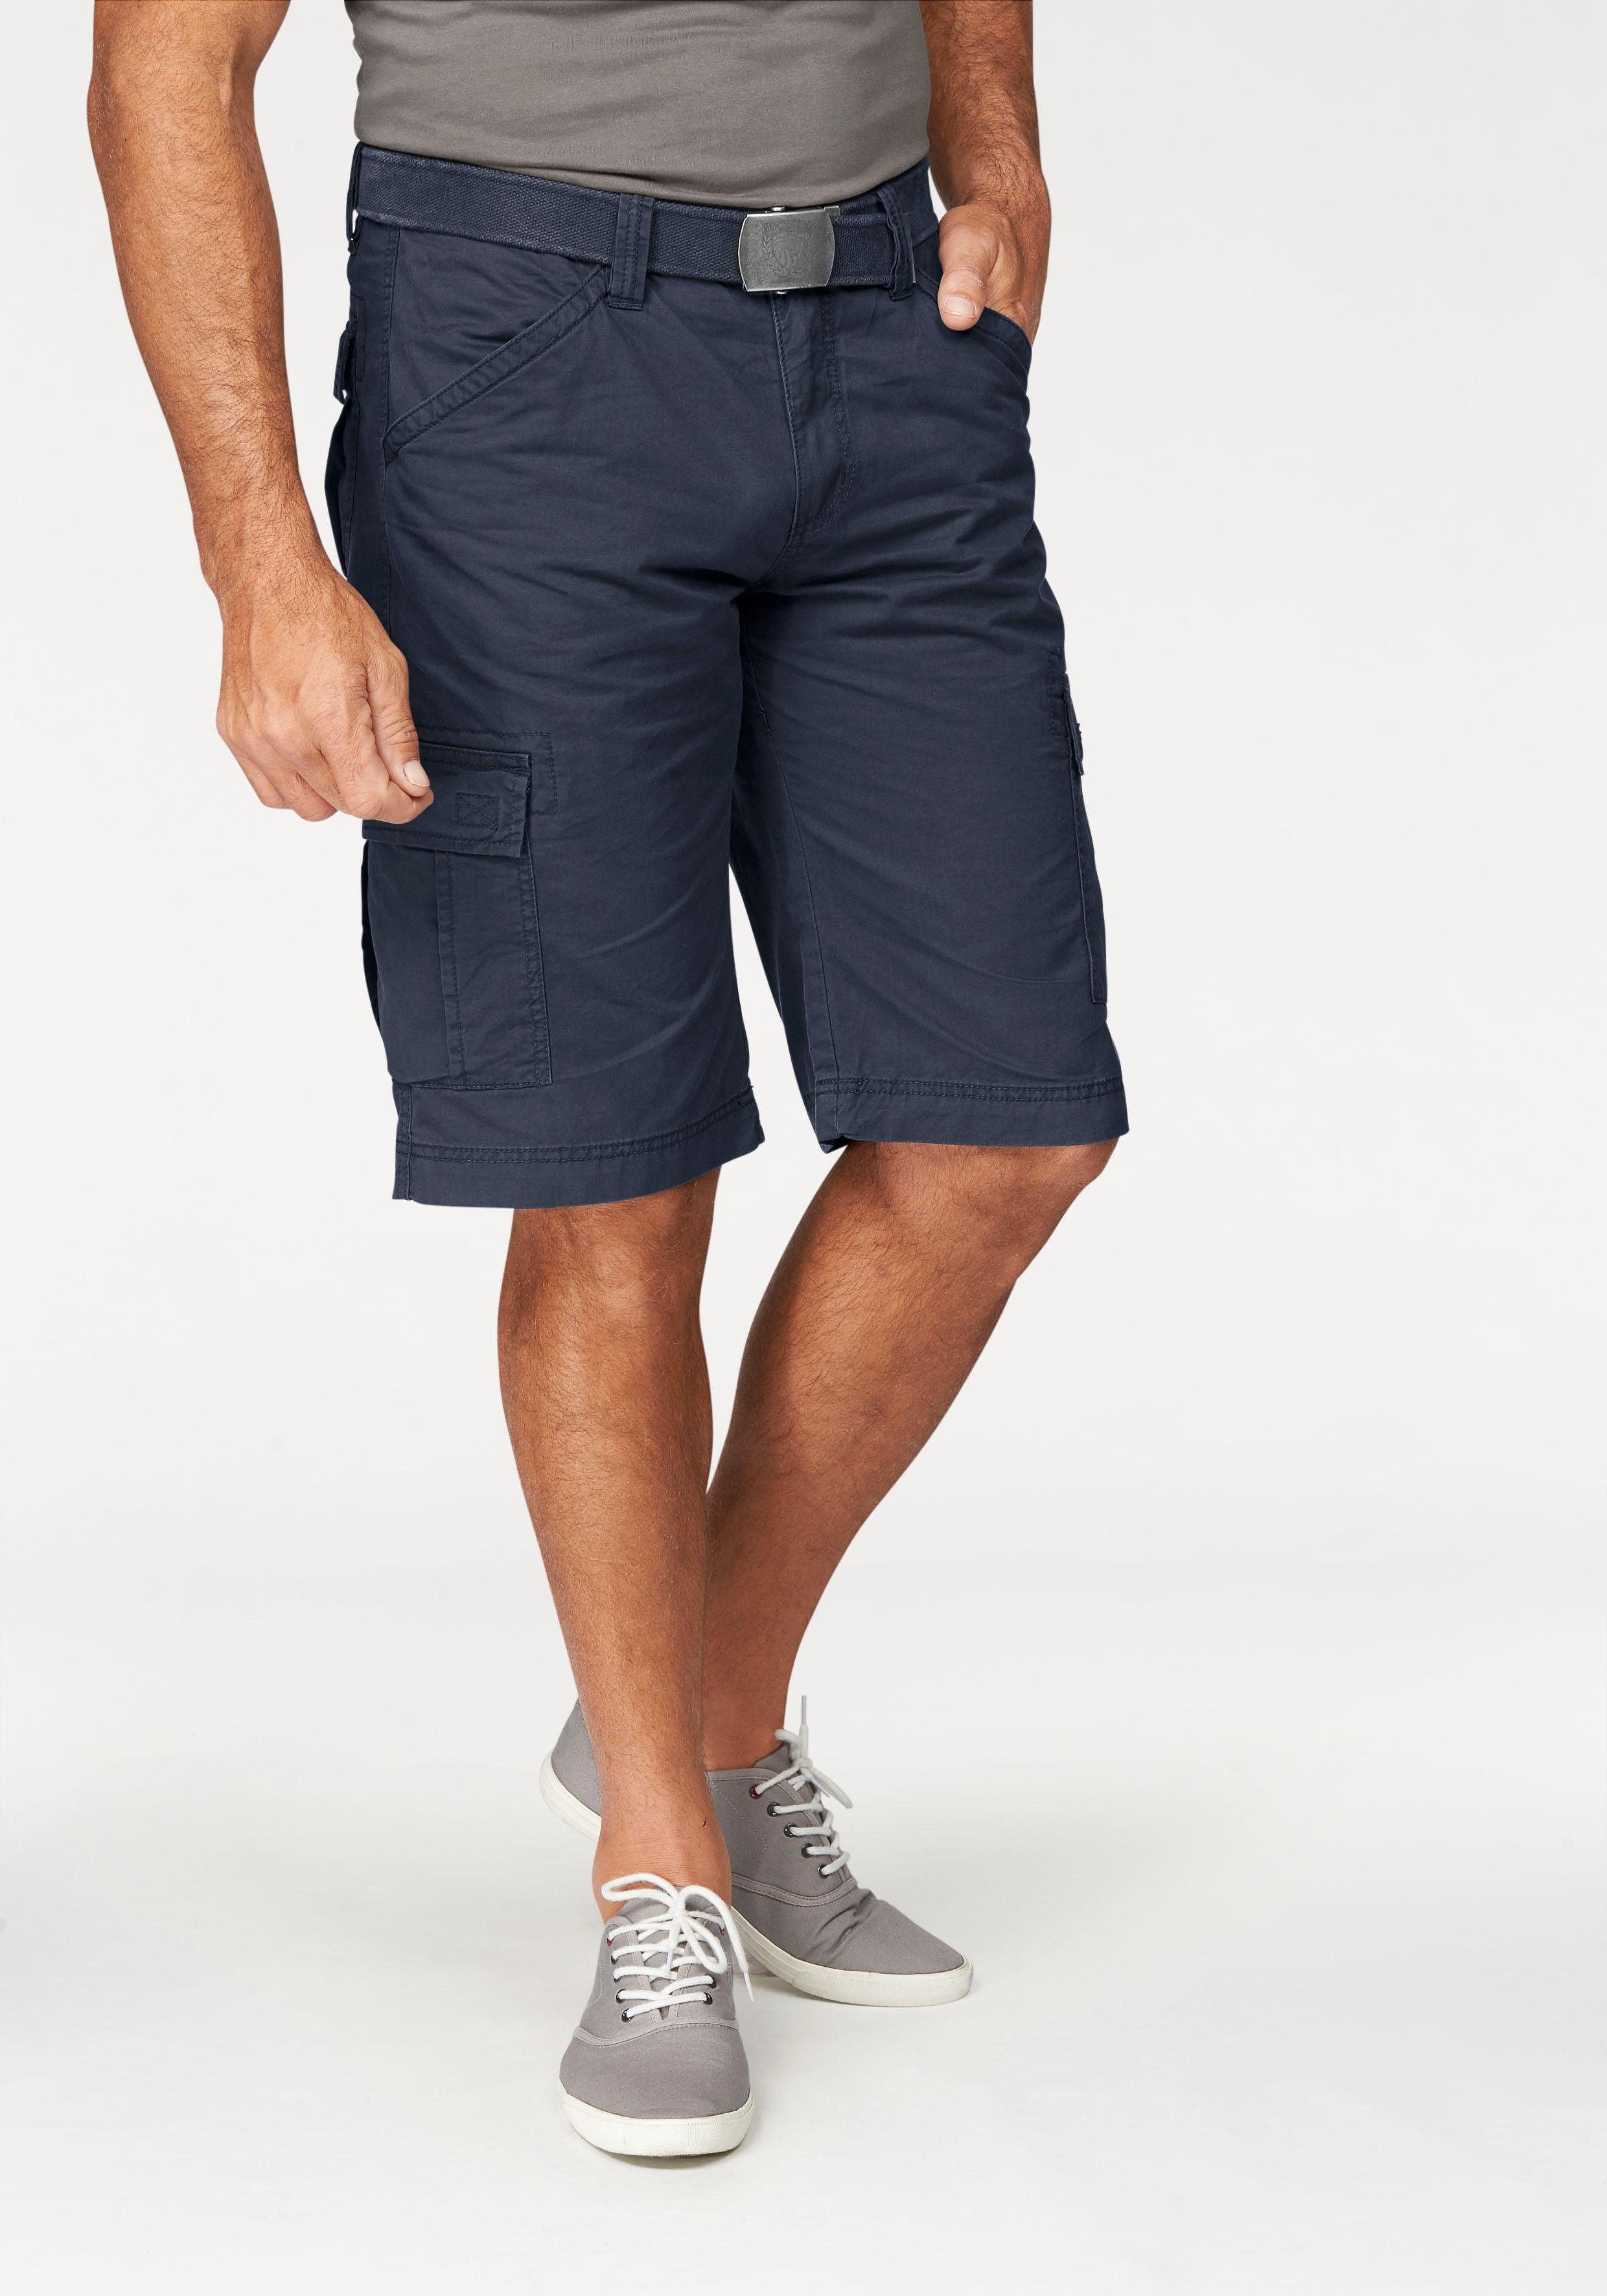 Bermudas für Herren » Bermuda-Shorts kaufen | OTTO